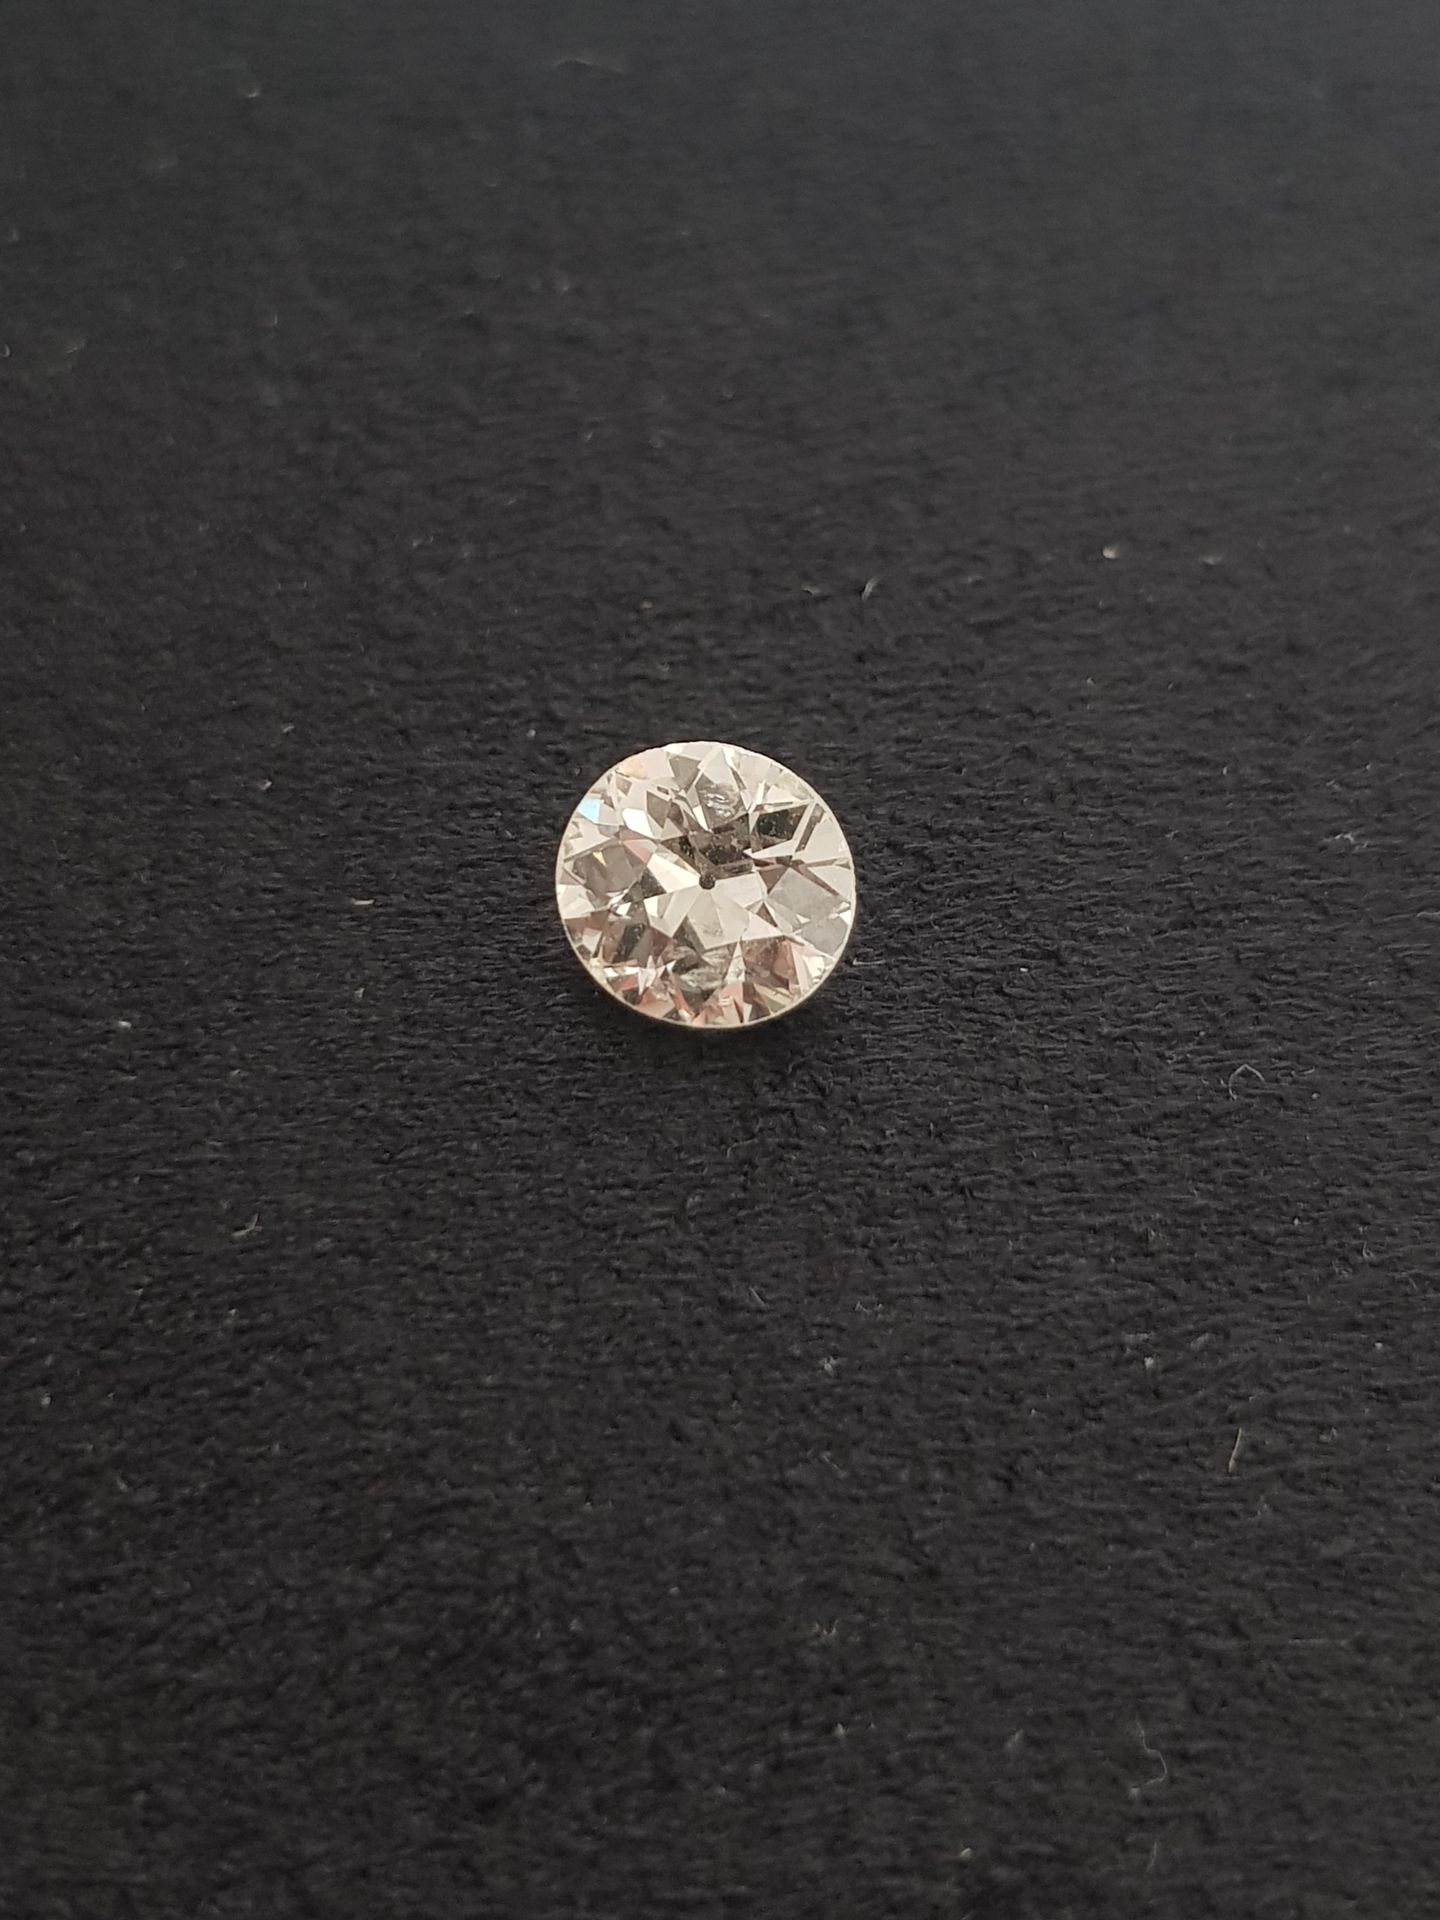 Null Diamant rond de taille ancienne pesant 1.81 ct sur papier.